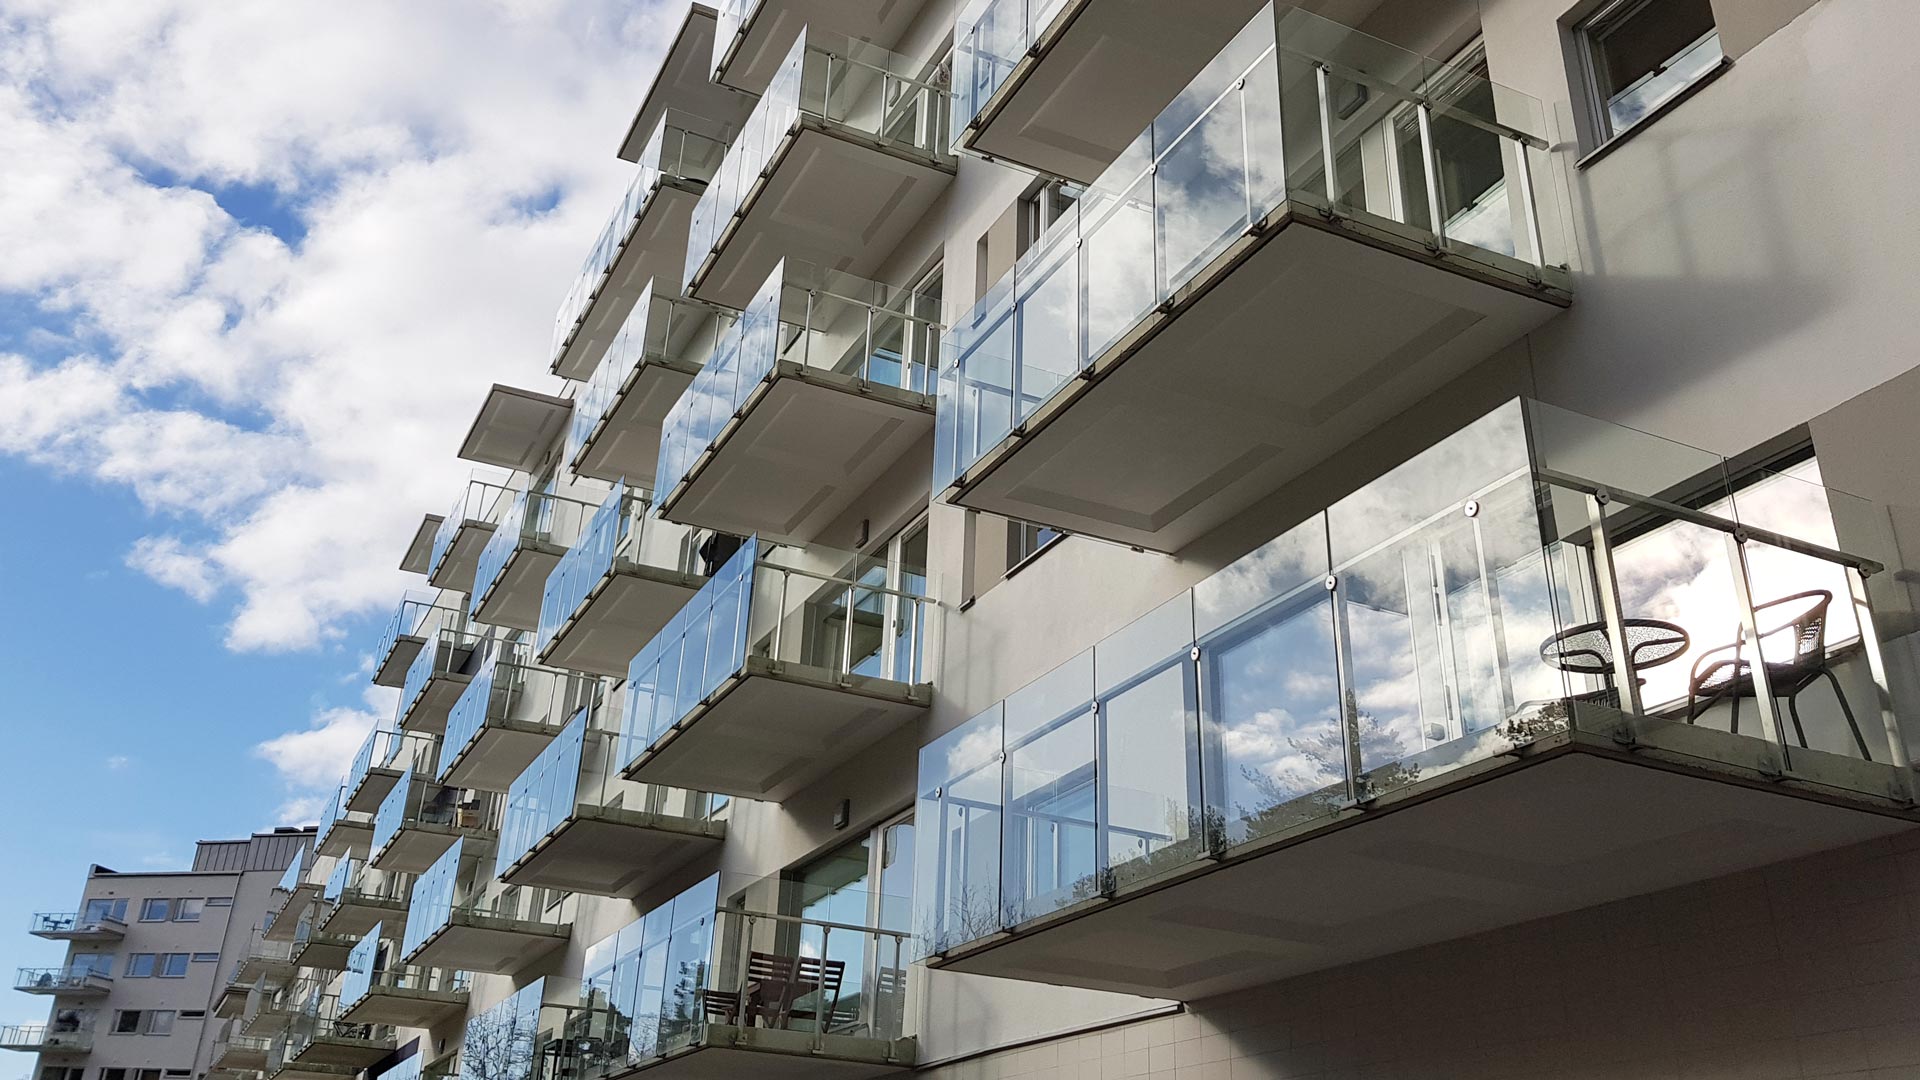 RIPO margas modernos daudzdzīvokļu namu projektos Zviedrijā